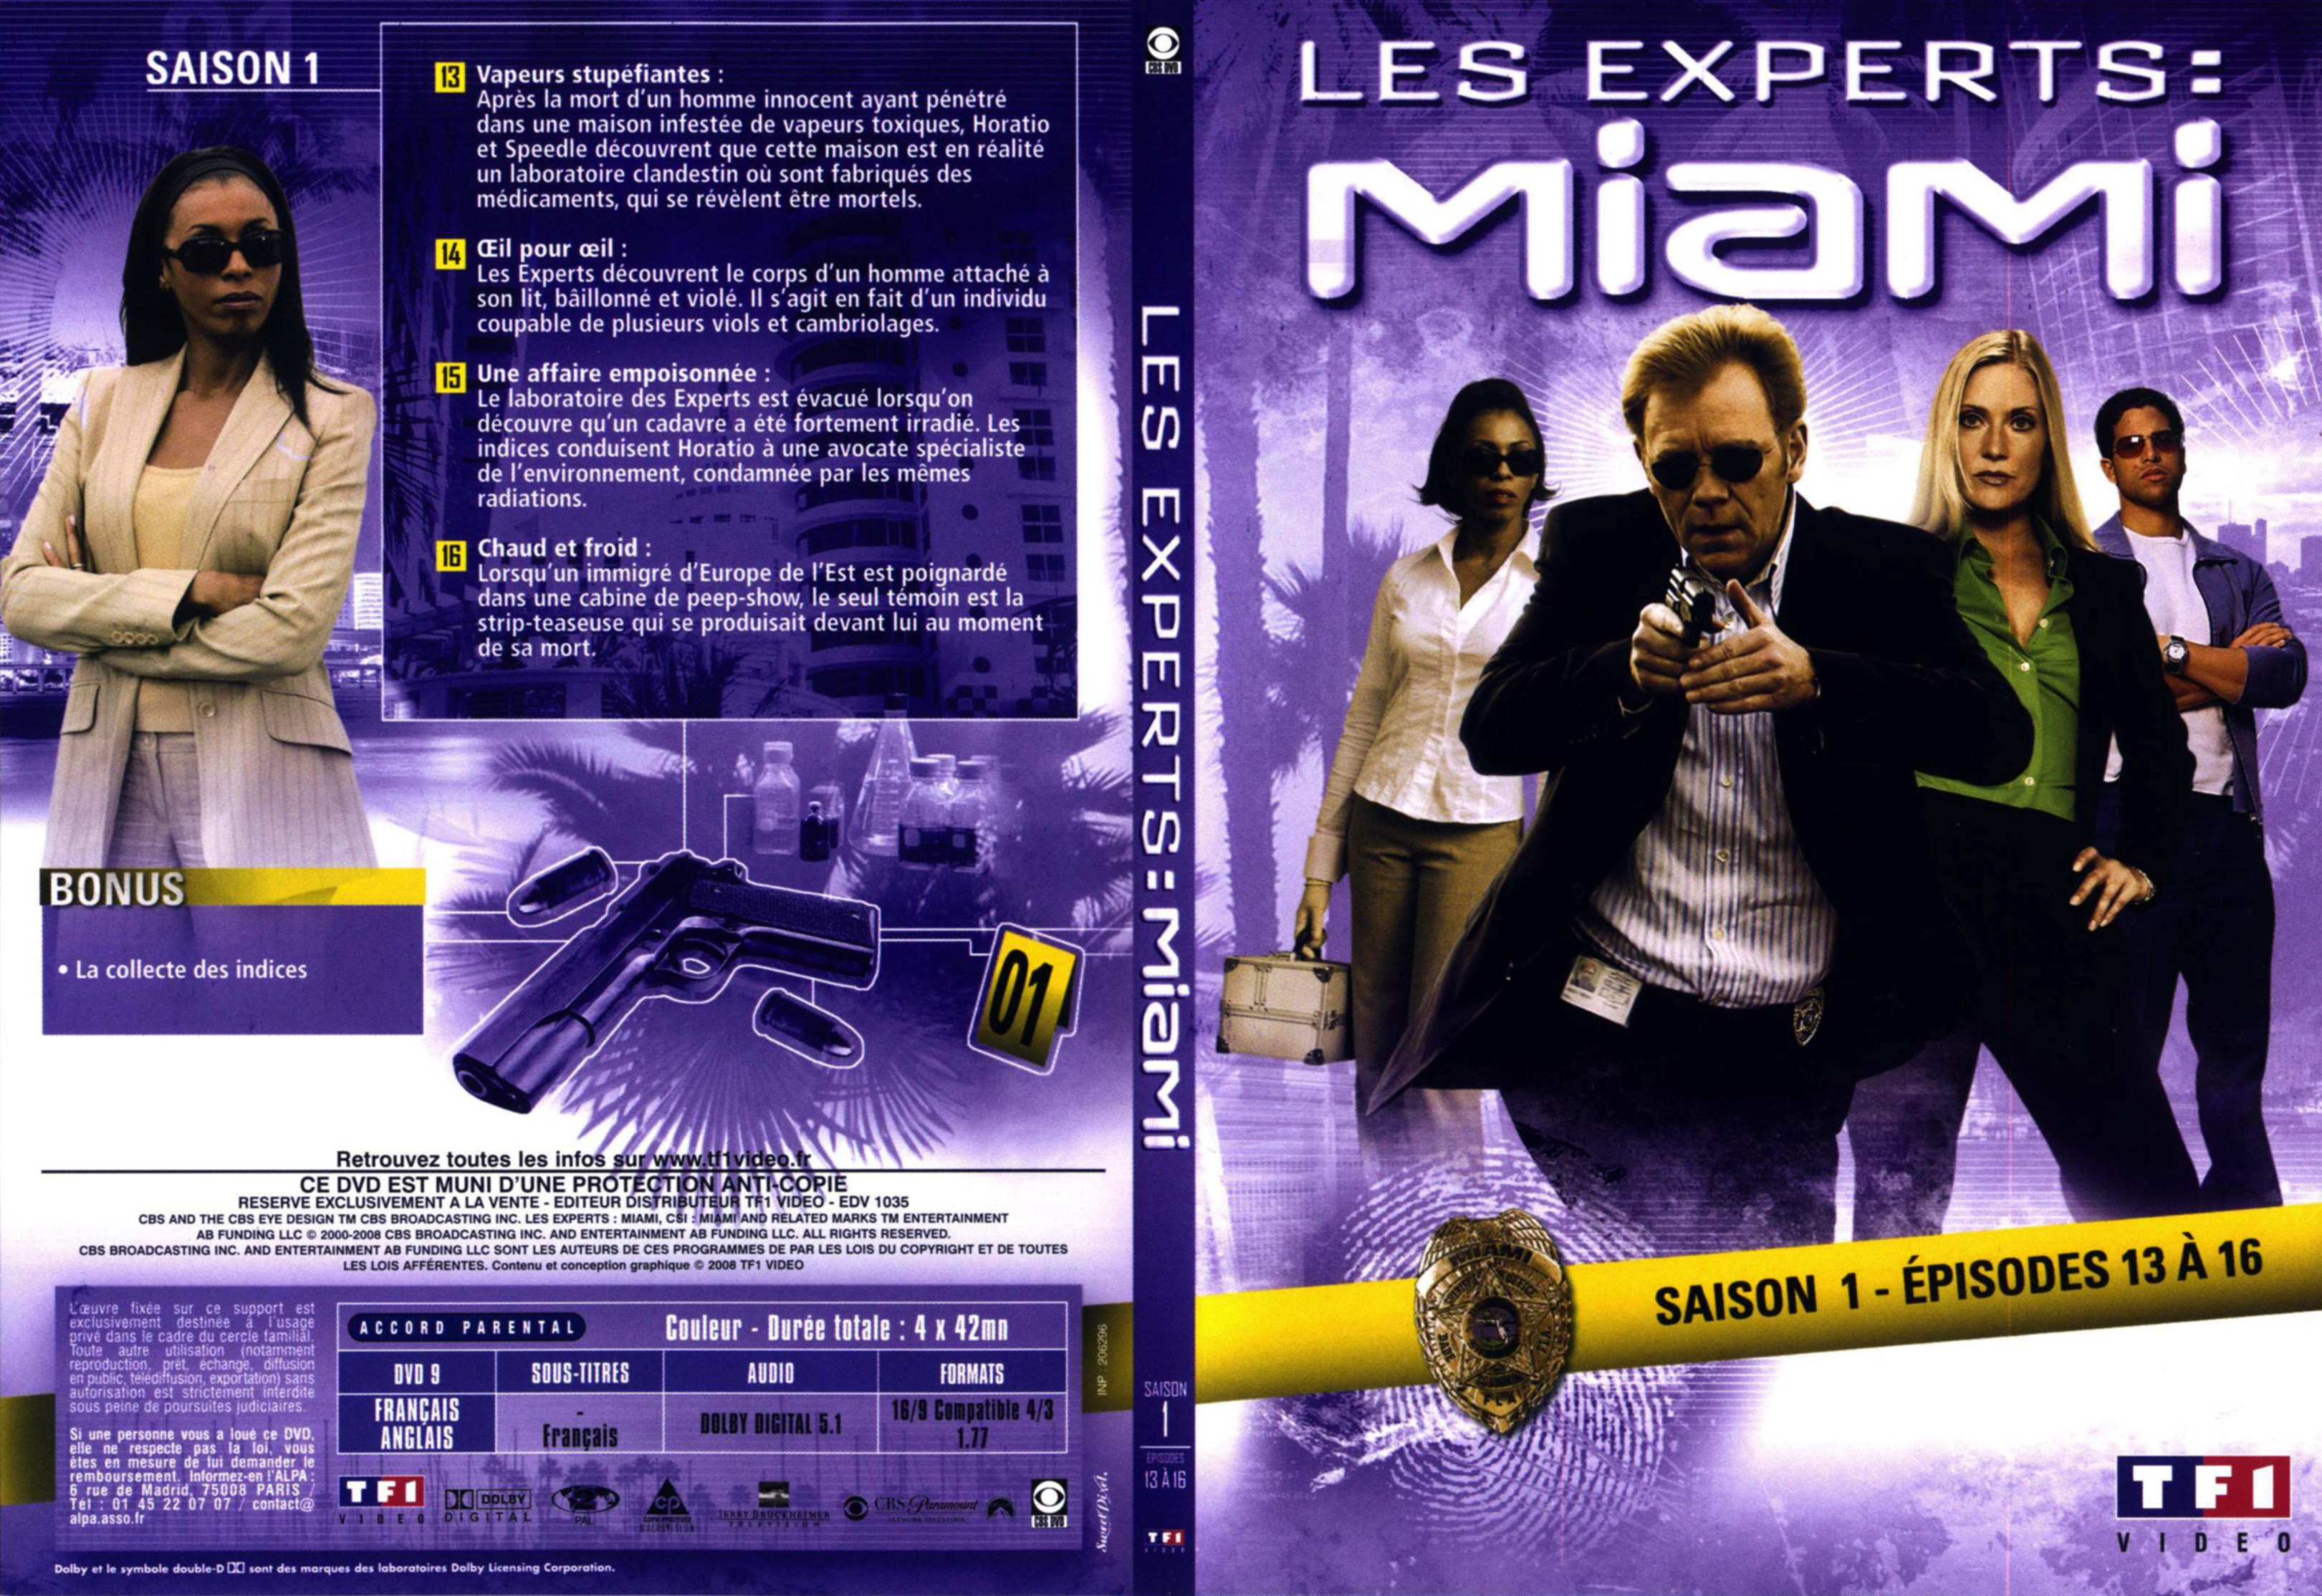 Jaquette DVD Les experts Miami Saison 1 vol 2 DVD 1 v2